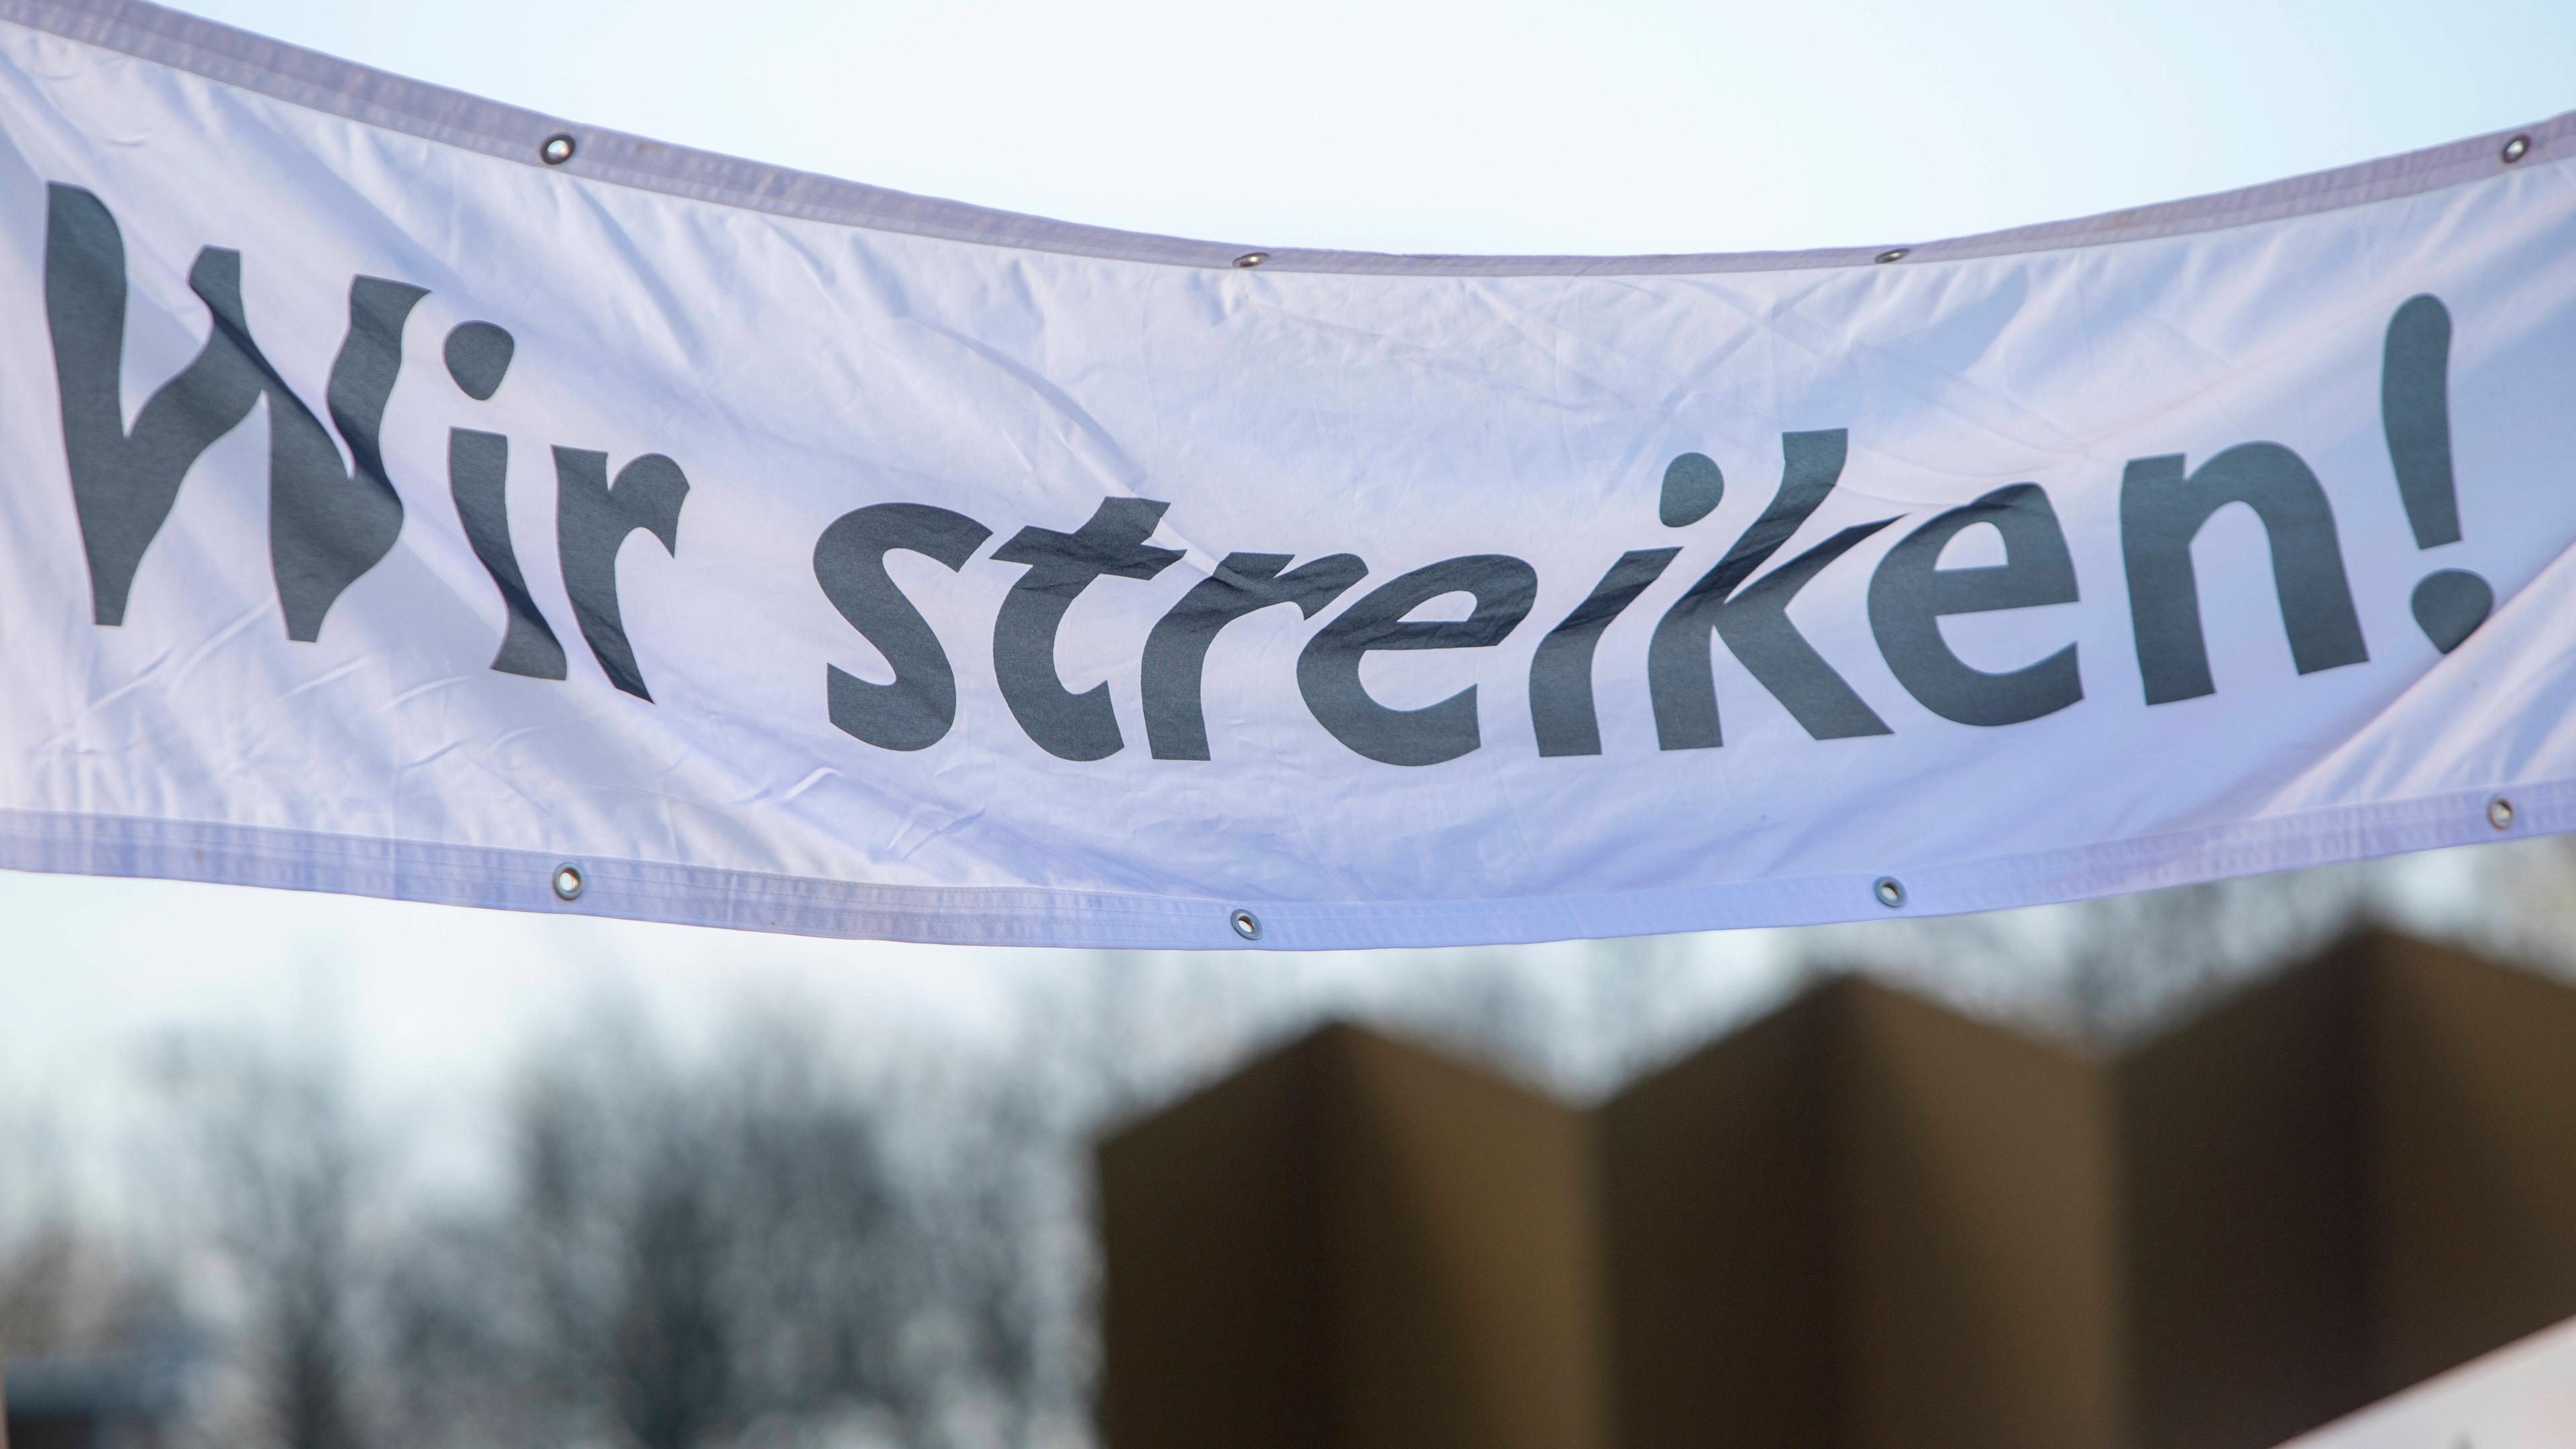 Banner mit der Aufschrift: "Wir streiken!"